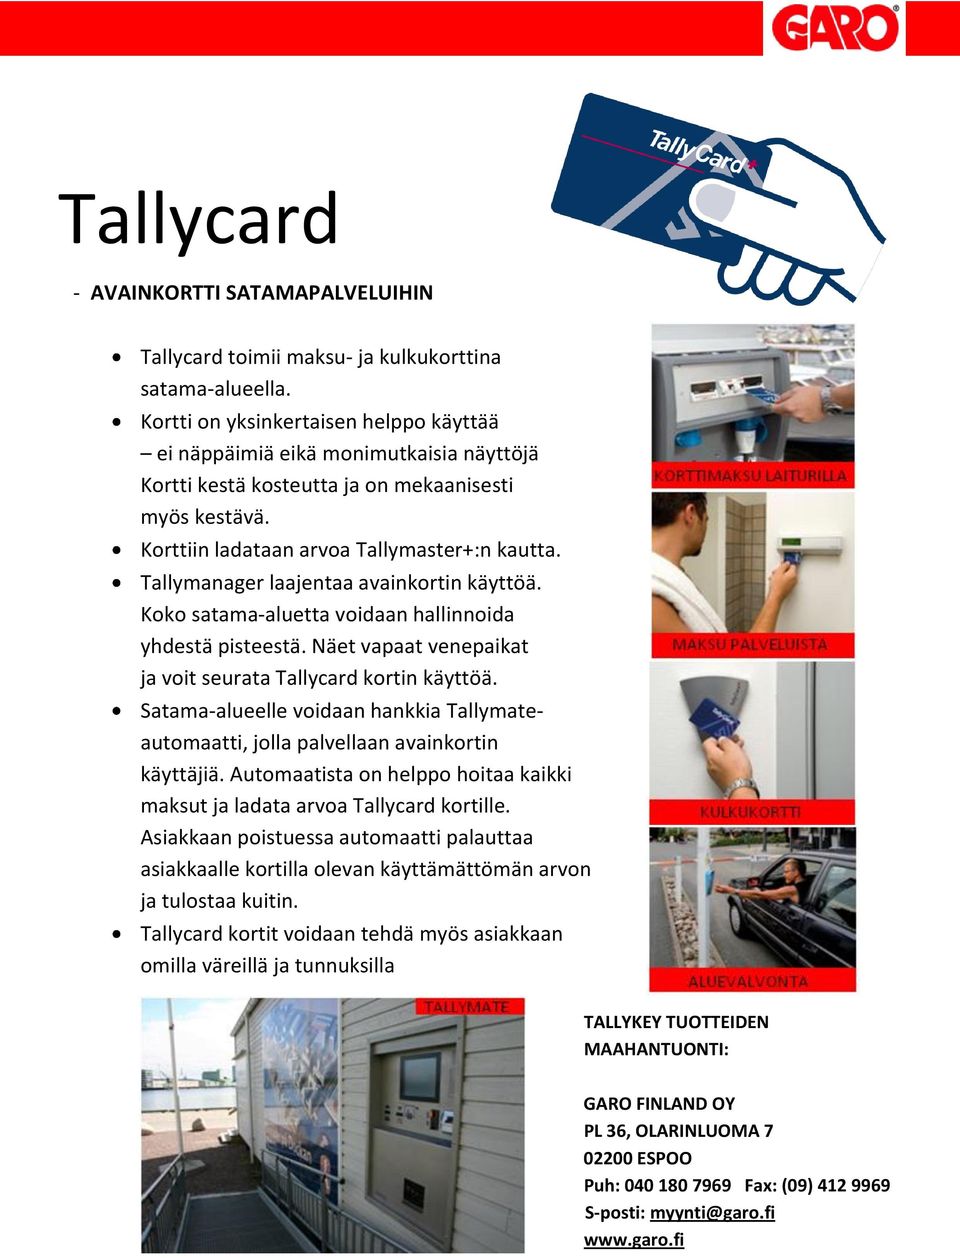 Tallymanager laajentaa avainkortin käyttöä. Koko satama-aluetta voidaan hallinnoida yhdestä pisteestä. Näet vapaat venepaikat ja voit seurata Tallycard kortin käyttöä.